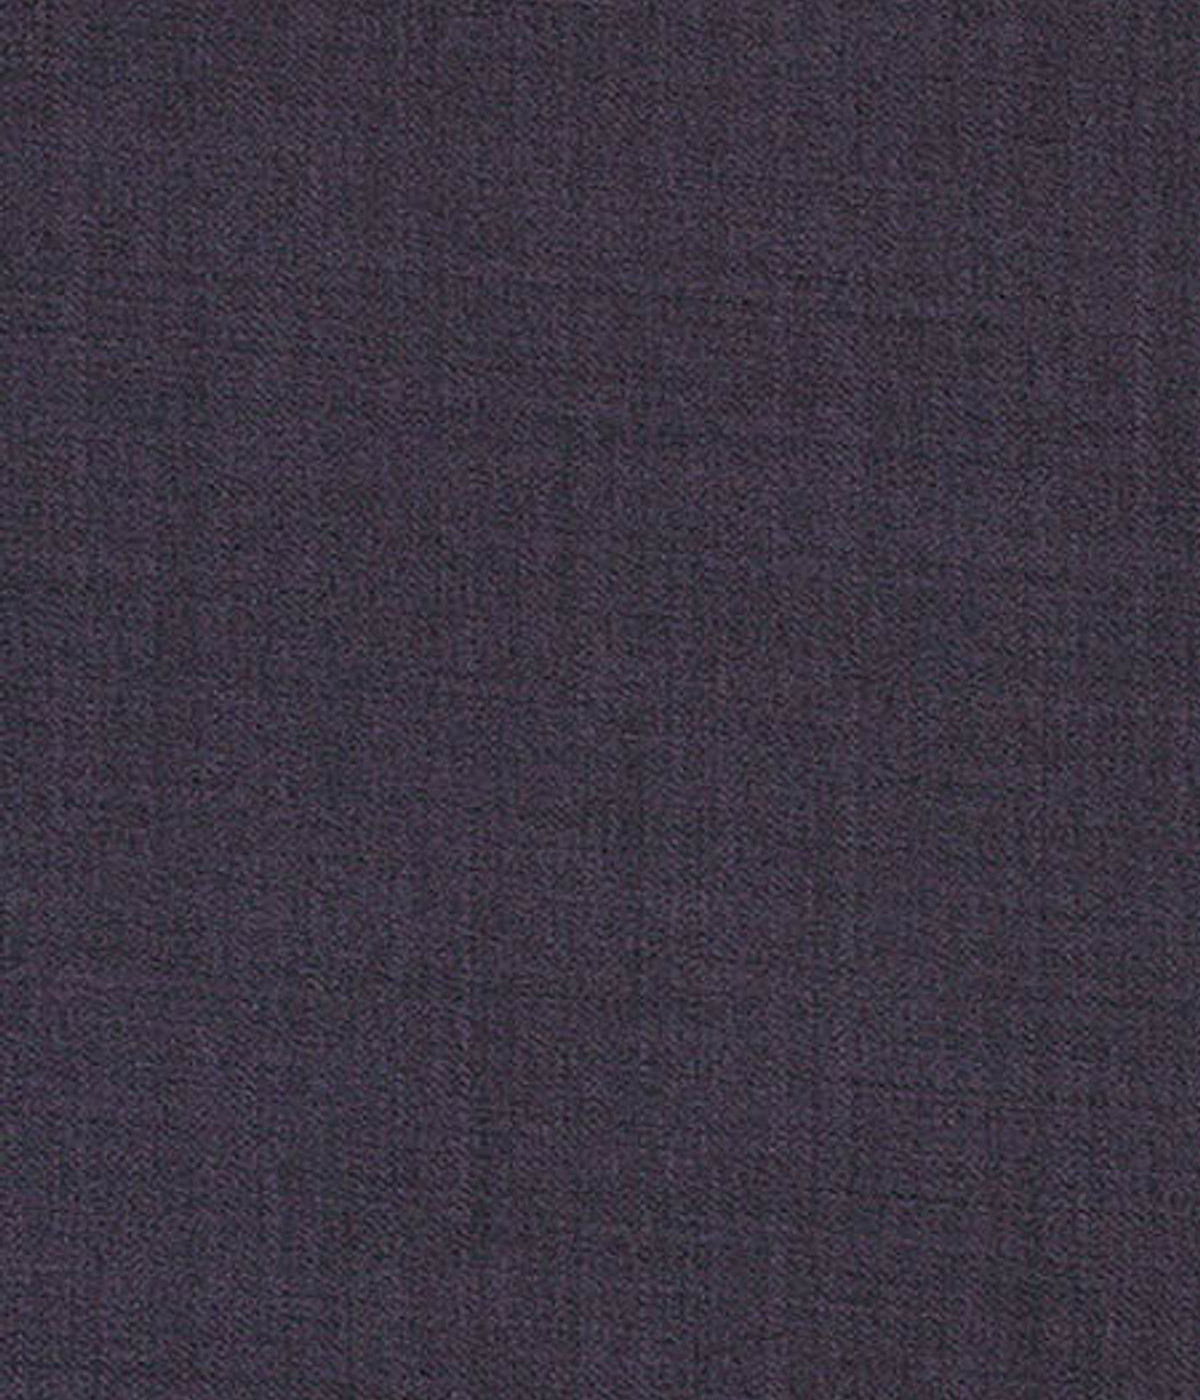 Spanish Purple Jodhpuri Suit- view-3